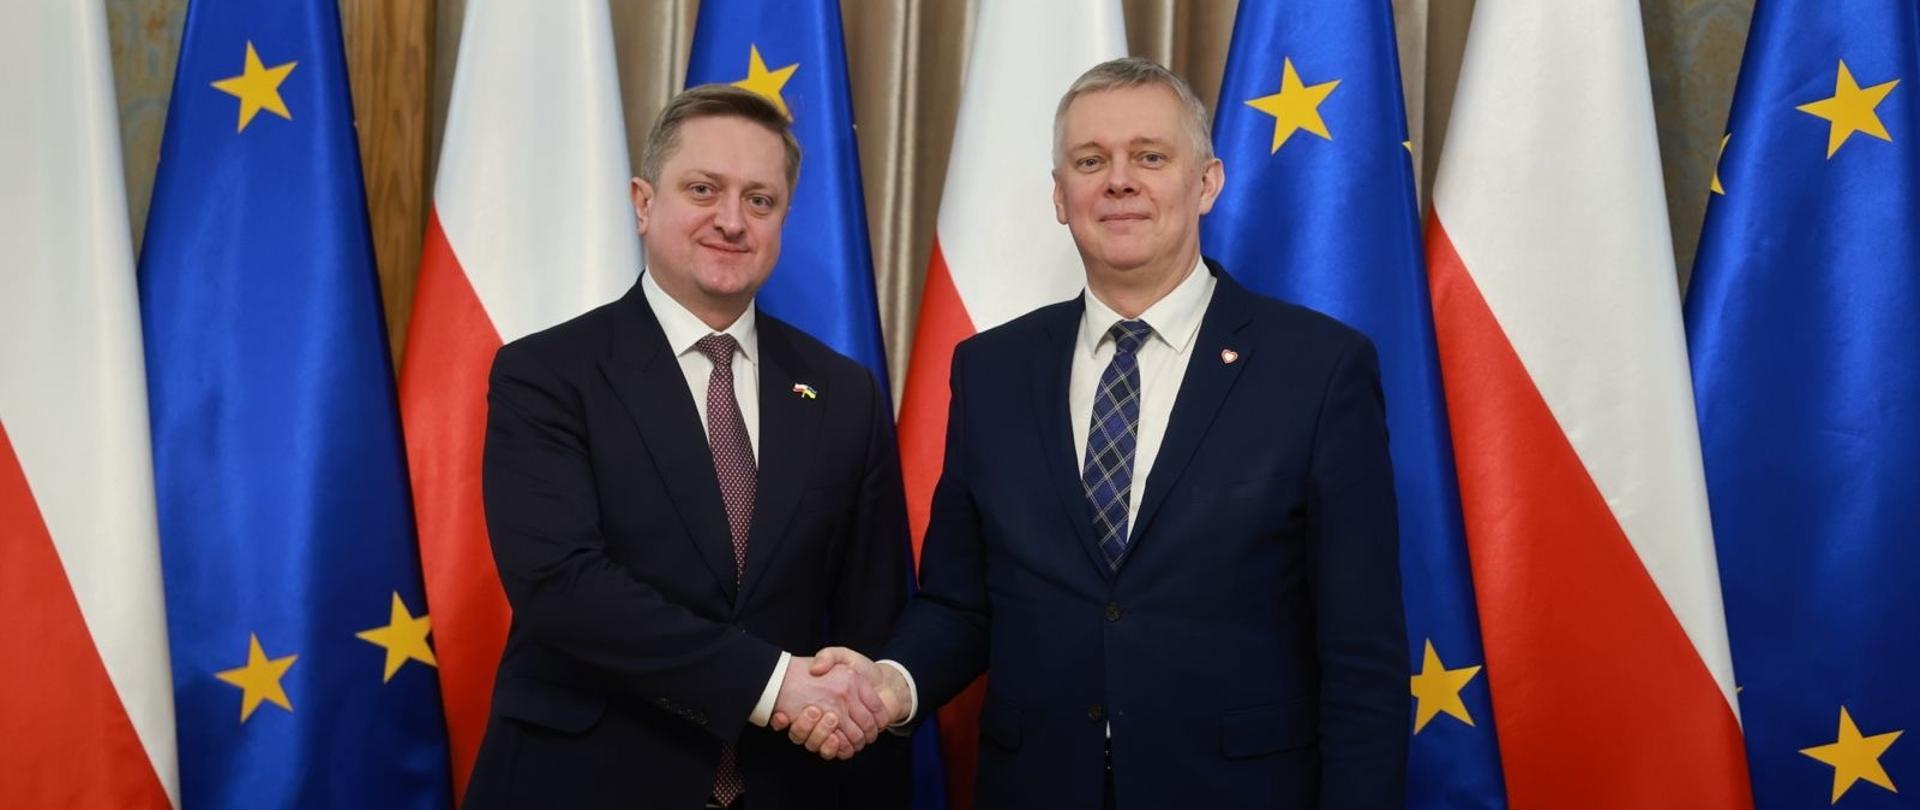 Minister_Koordynator Służb Specjalnych z Ambasadorem Ukrainy wymieniają uścisk dłoni na tle flag Polski i Unii Europejskiej